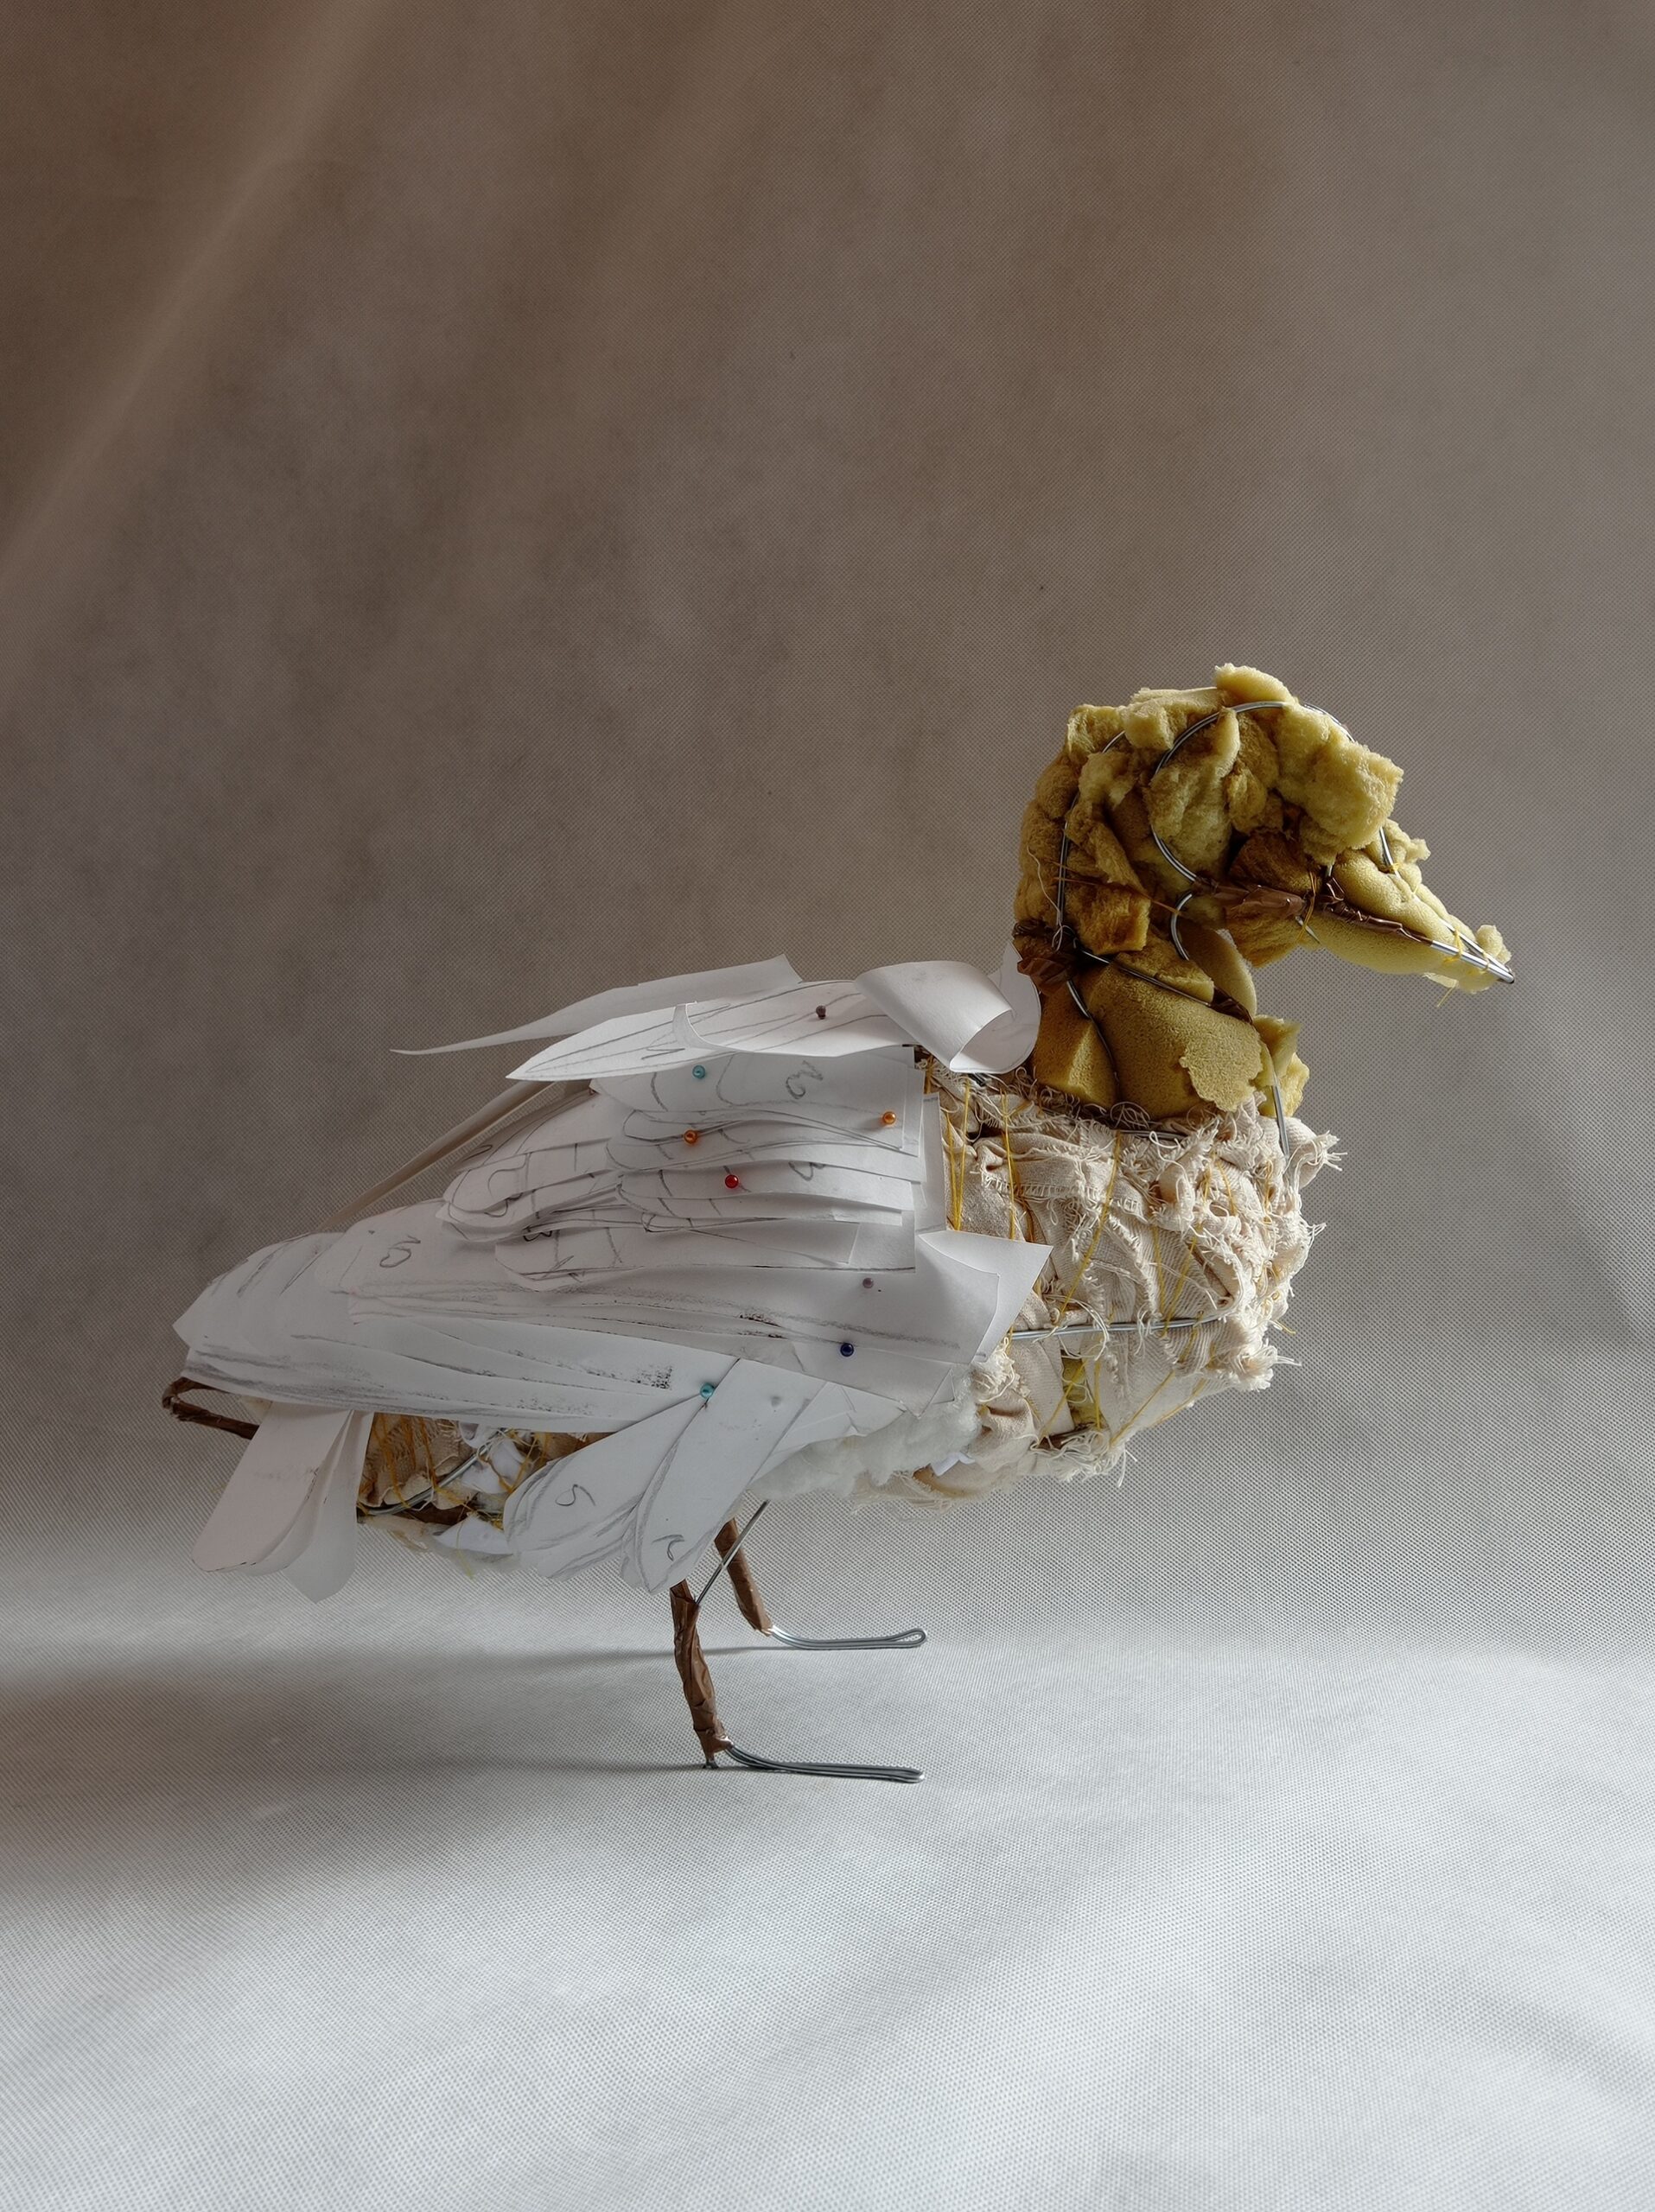 zdjęcie przedstawia rzeźbę kaczki, wykonaną z drutu, gąbki, materiału i papieru(elementy skrzydeł). Kaczka stoi na szarym tle, widok z boku